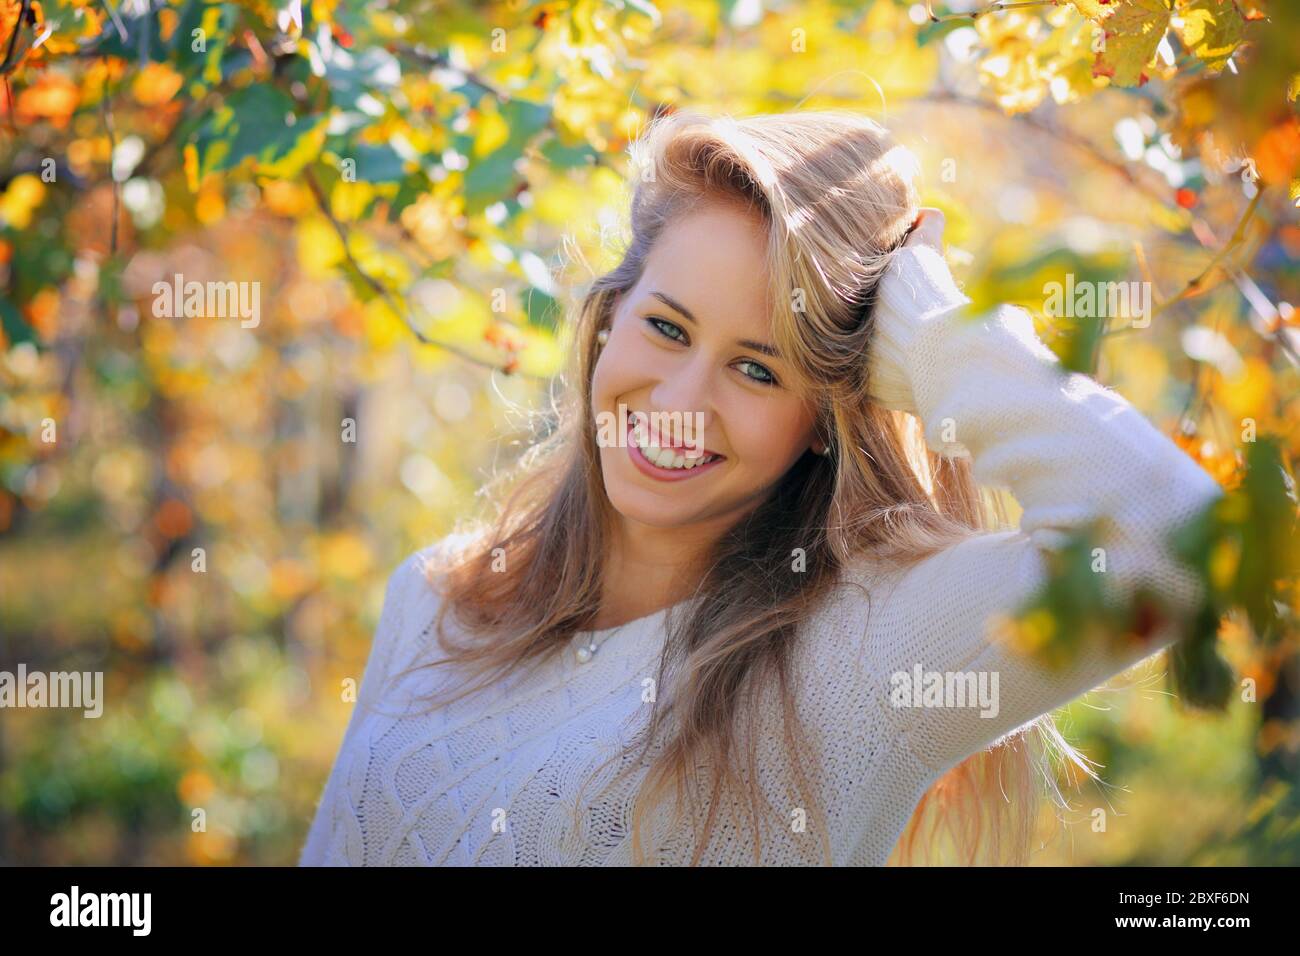 Schöne lächelnde Mädchen in warmen Herbstfarben. Porträt mit saisonaler Hintergrundbeleuchtung Stockfoto